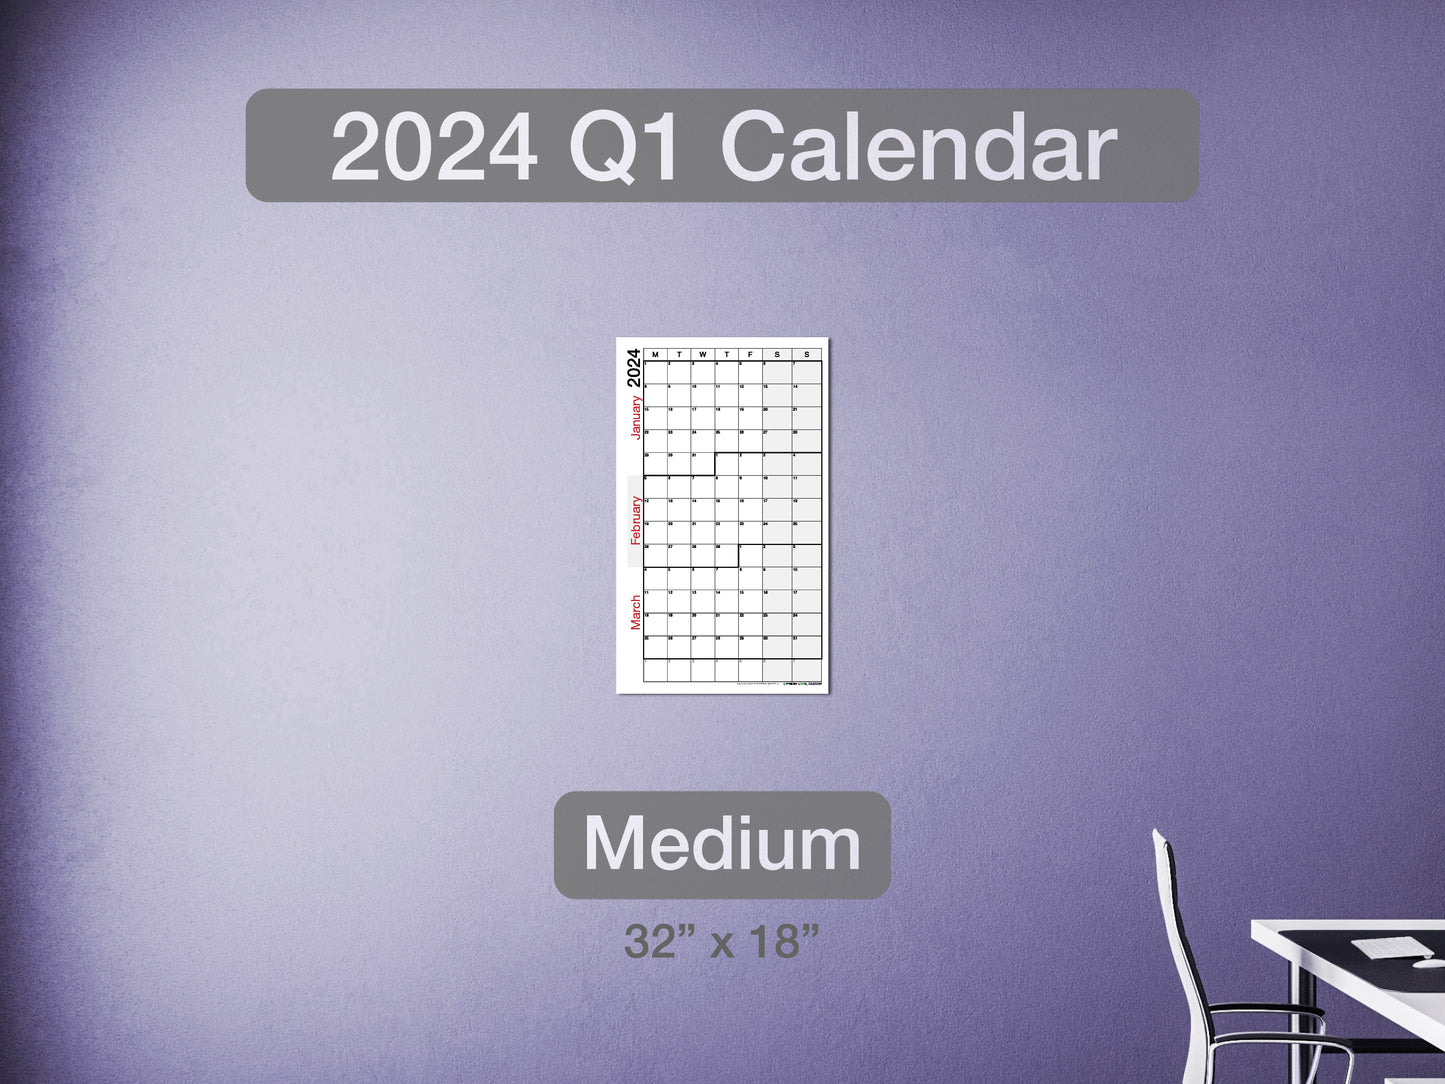 2024 Q1 Calendar Medium